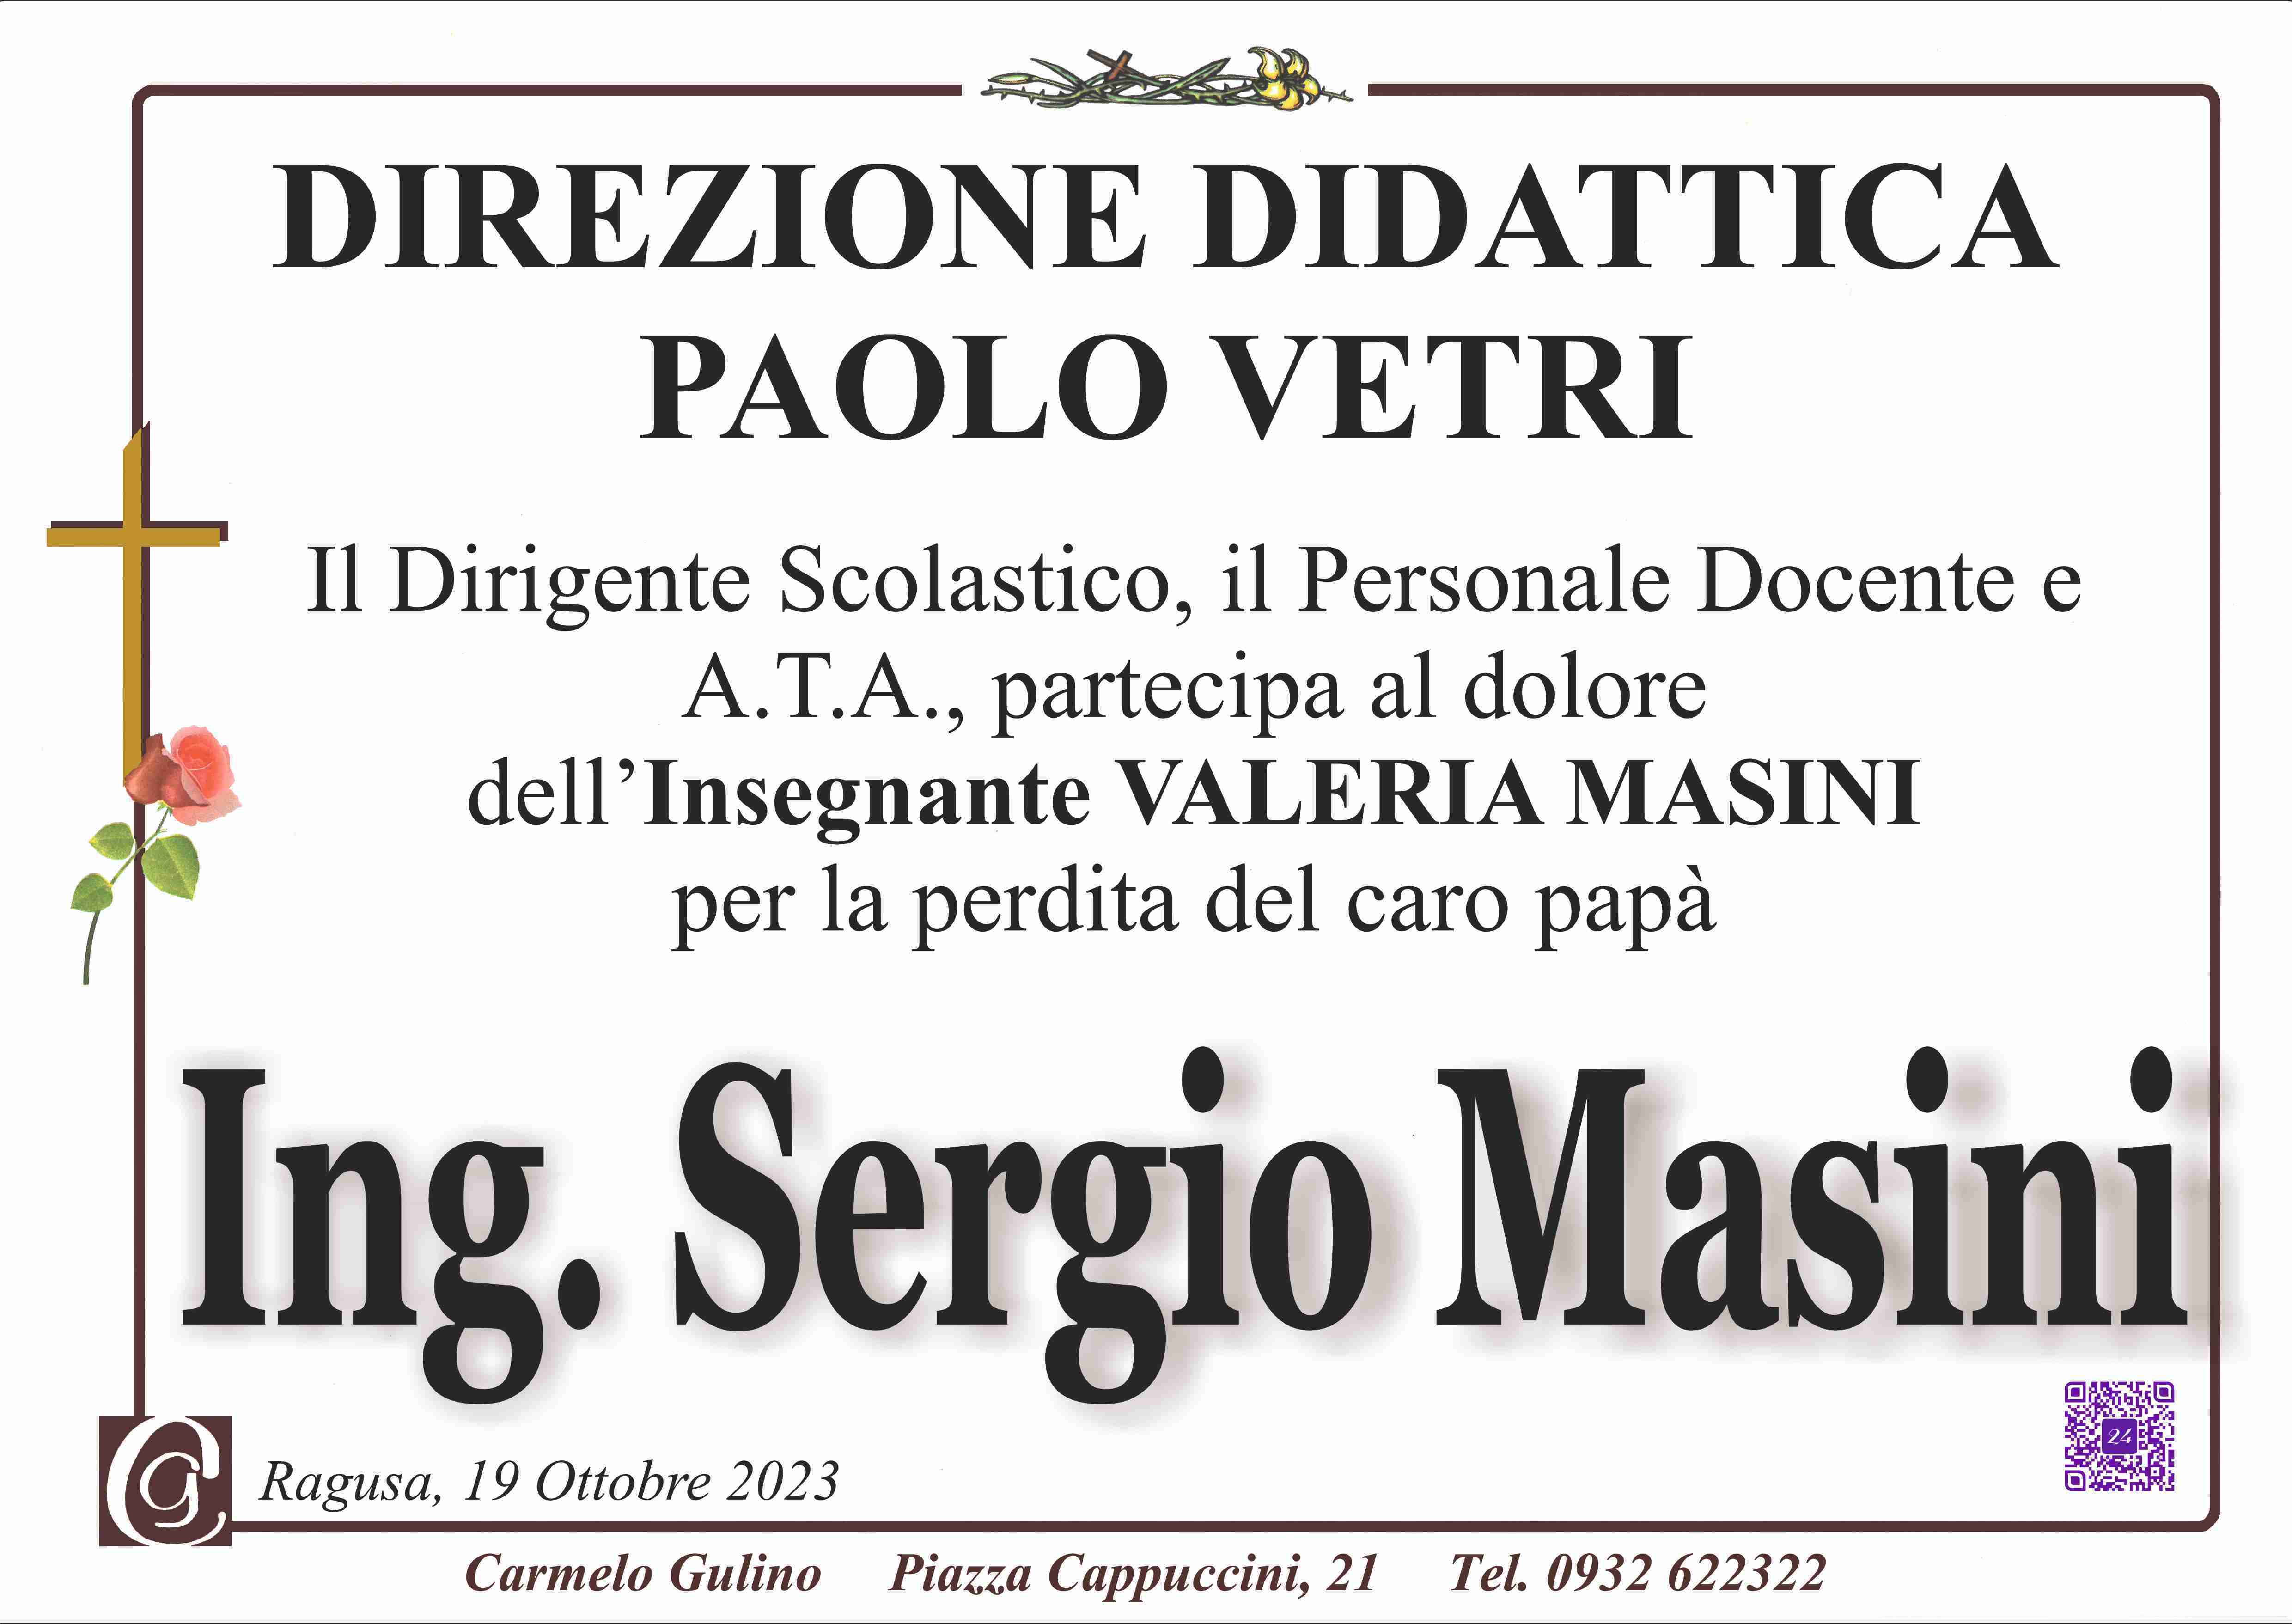 Ing. Sergio Masini